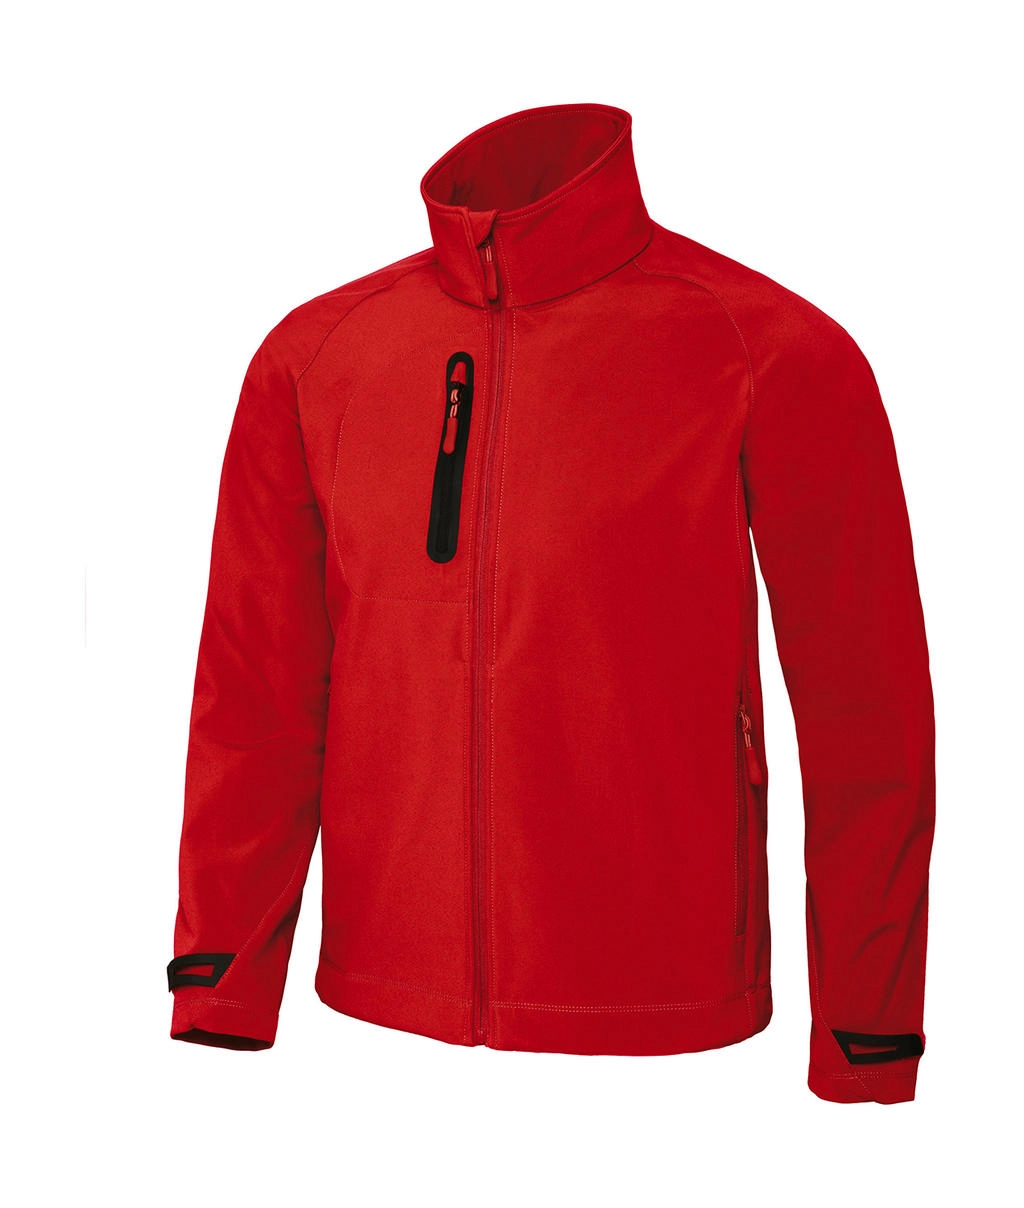 X-Lite Softshell/men Jacket zum Besticken und Bedrucken in der Farbe Deep Red mit Ihren Logo, Schriftzug oder Motiv.